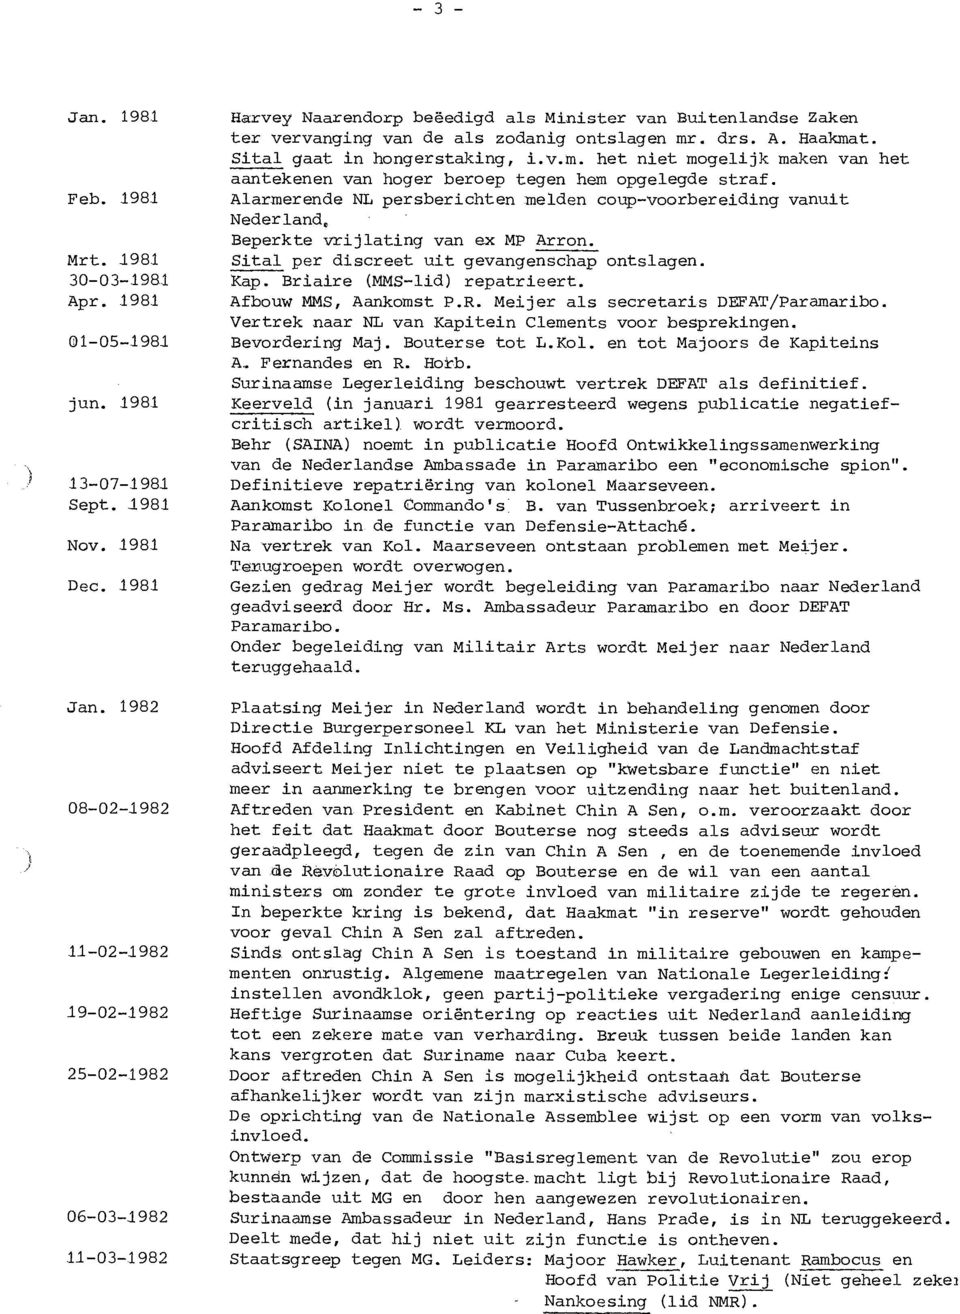 1981 Alarmerende NL persberichten melden coup-voorbereiding vanuit Nederland. Beperkte vrijlating van ex MP Arron. Mrt. 198.1 Sital per discreet uit gevangenschap ontslagen. 30-03-1981 Kap.